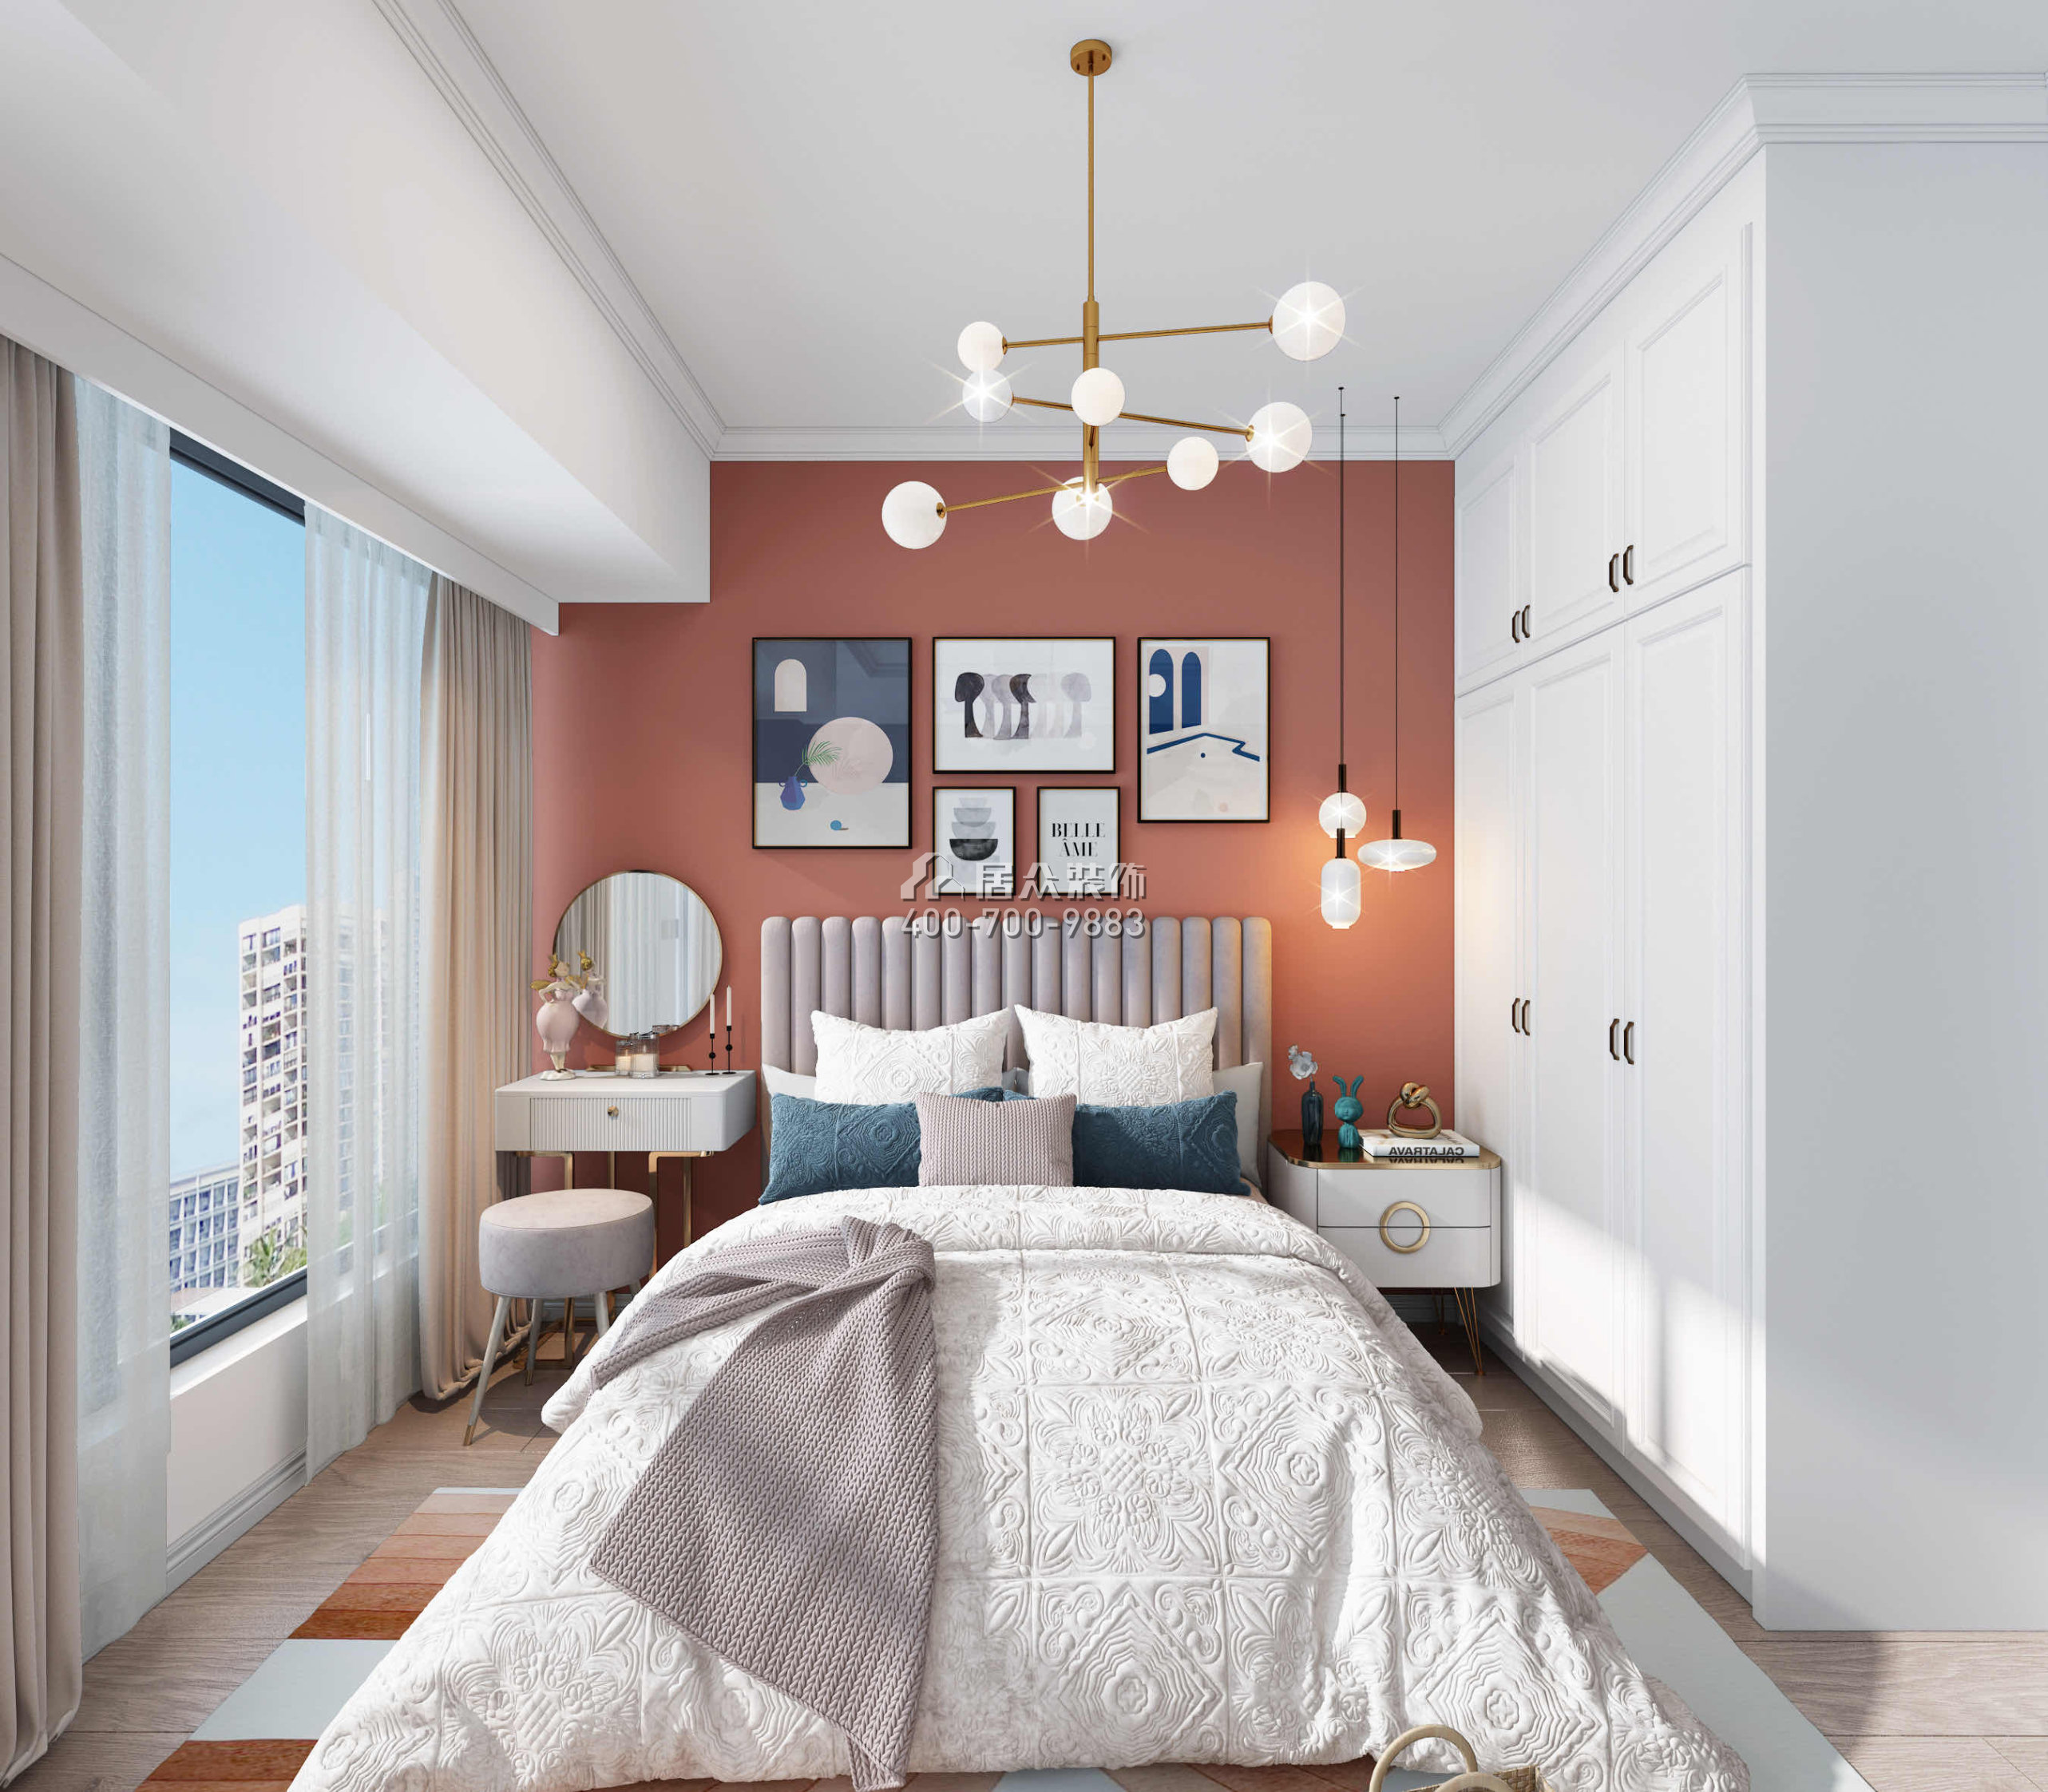 锦荟park120平方米北欧风格平层户型卧室装修效果图